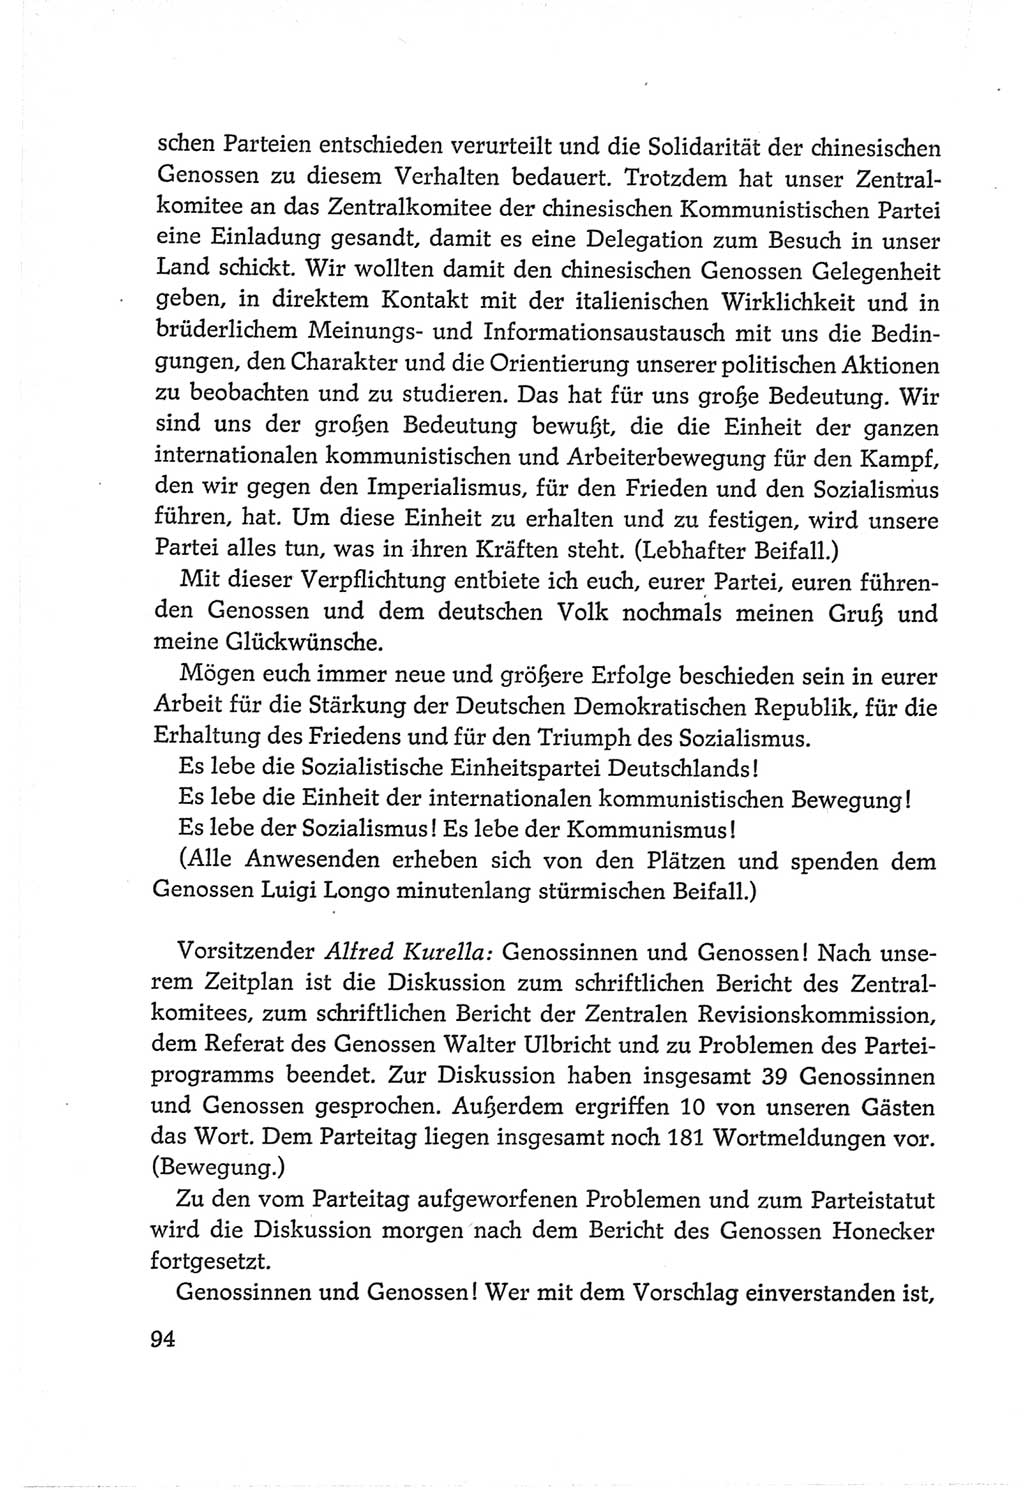 Protokoll der Verhandlungen des Ⅵ. Parteitages der Sozialistischen Einheitspartei Deutschlands (SED) [Deutsche Demokratische Republik (DDR)] 1963, Band Ⅱ, Seite 94 (Prot. Verh. Ⅵ. PT SED DDR 1963, Bd. Ⅱ, S. 94)